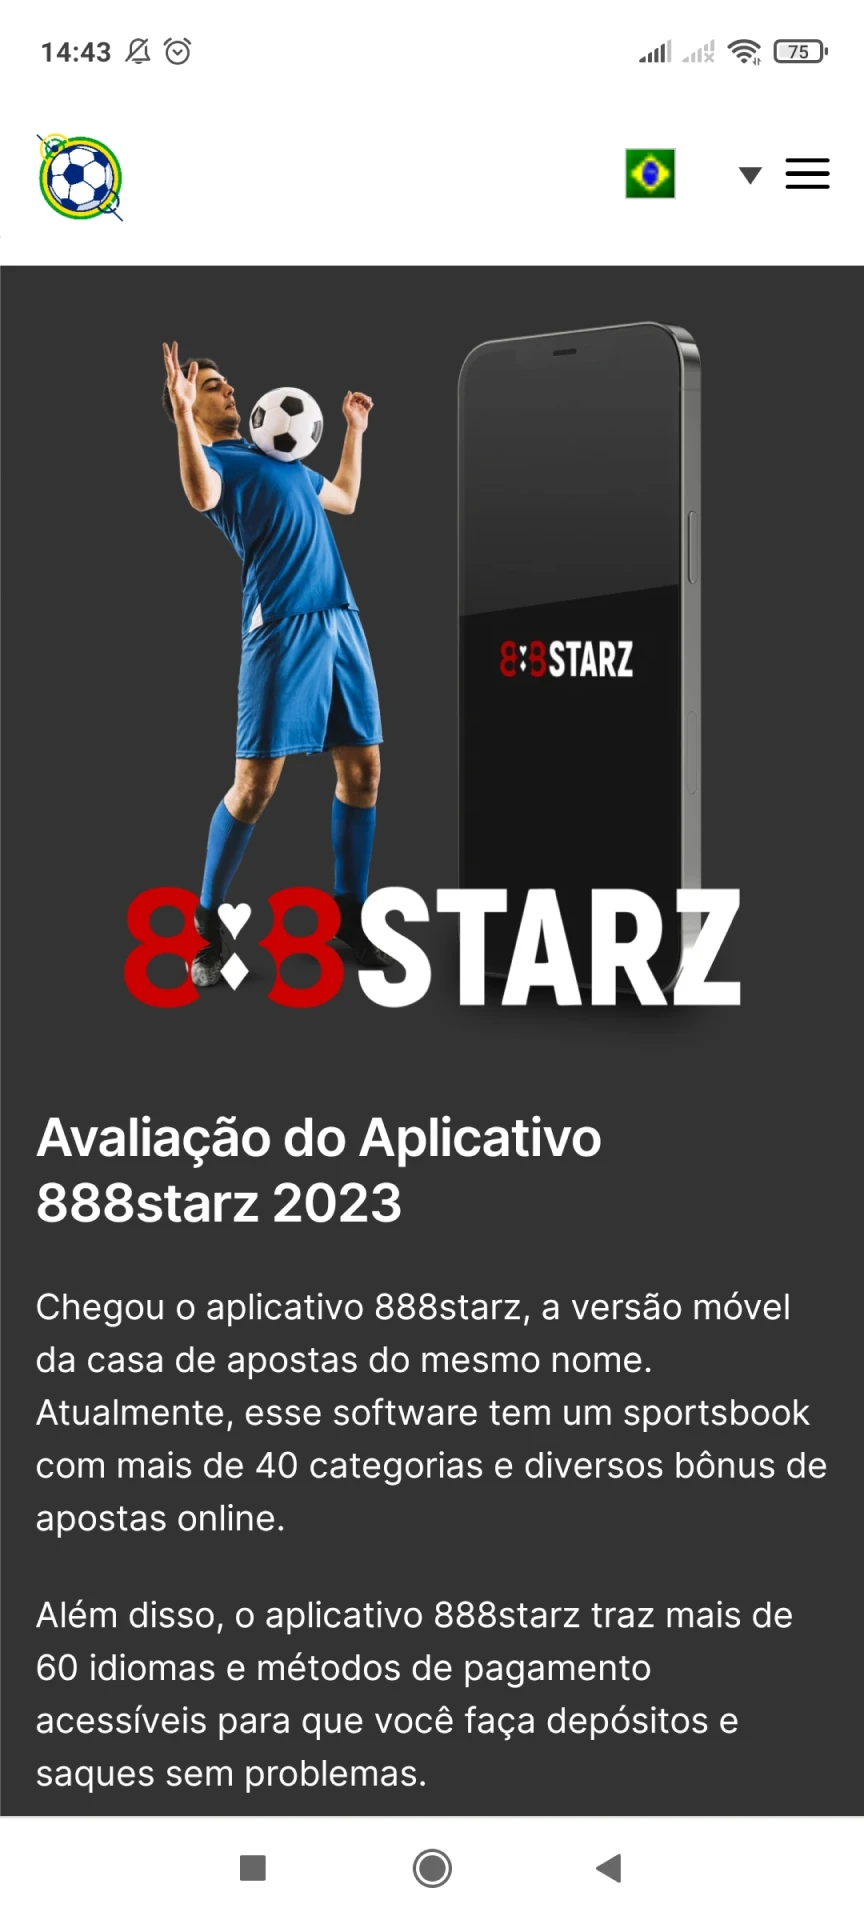 Visite a página inicial do 888starz para baixar aplicativos Android.